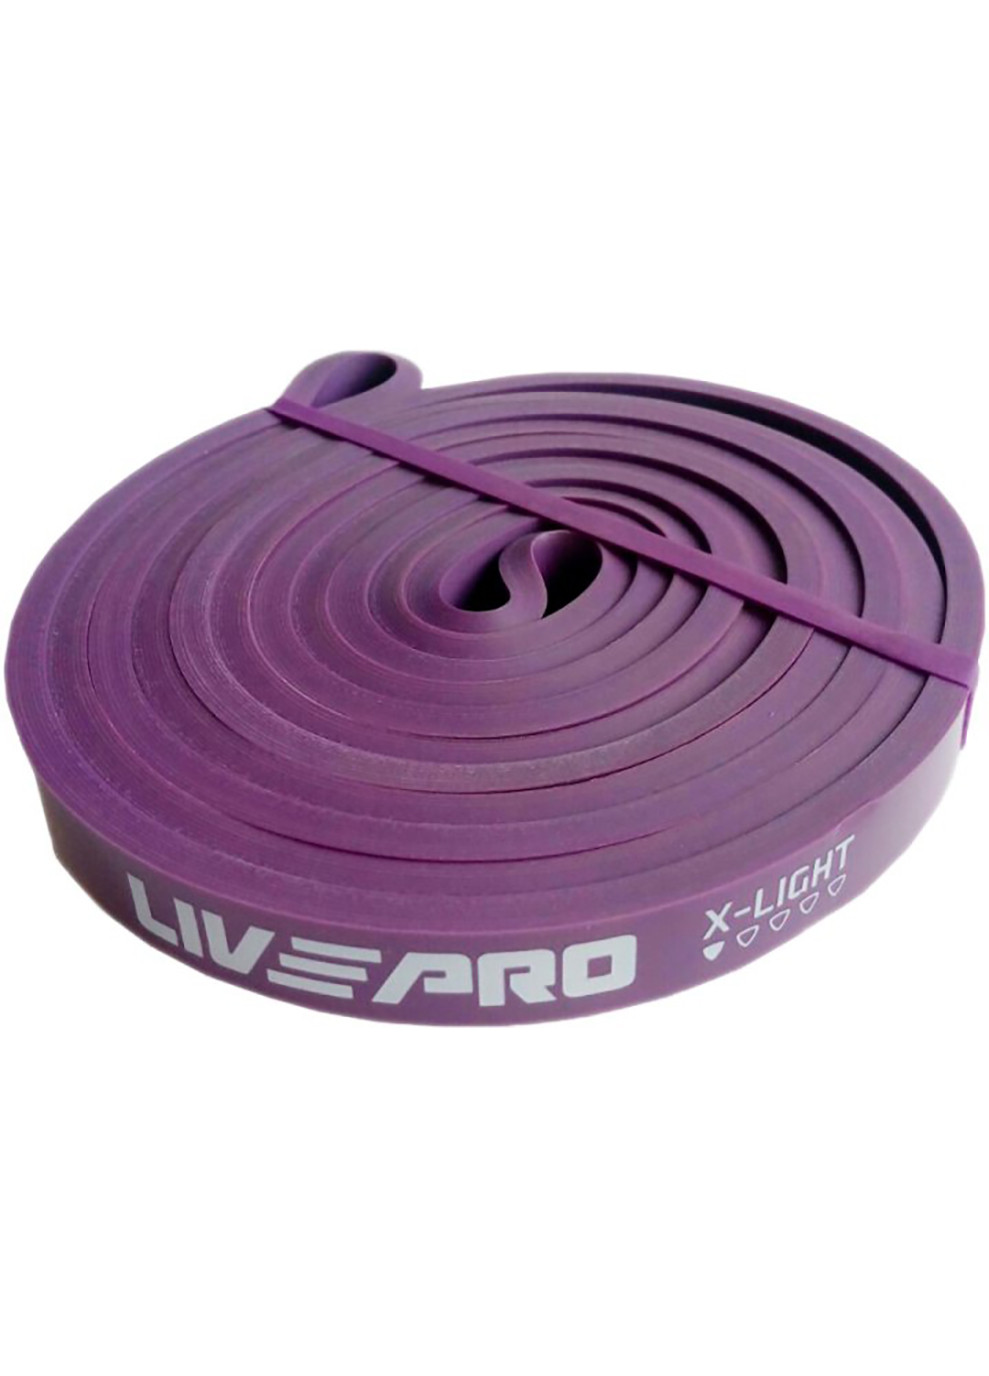 Резина для подтягивания SUPER BAND X-light фиолетовая 2080x13x4.5мм LivePro (258402830)